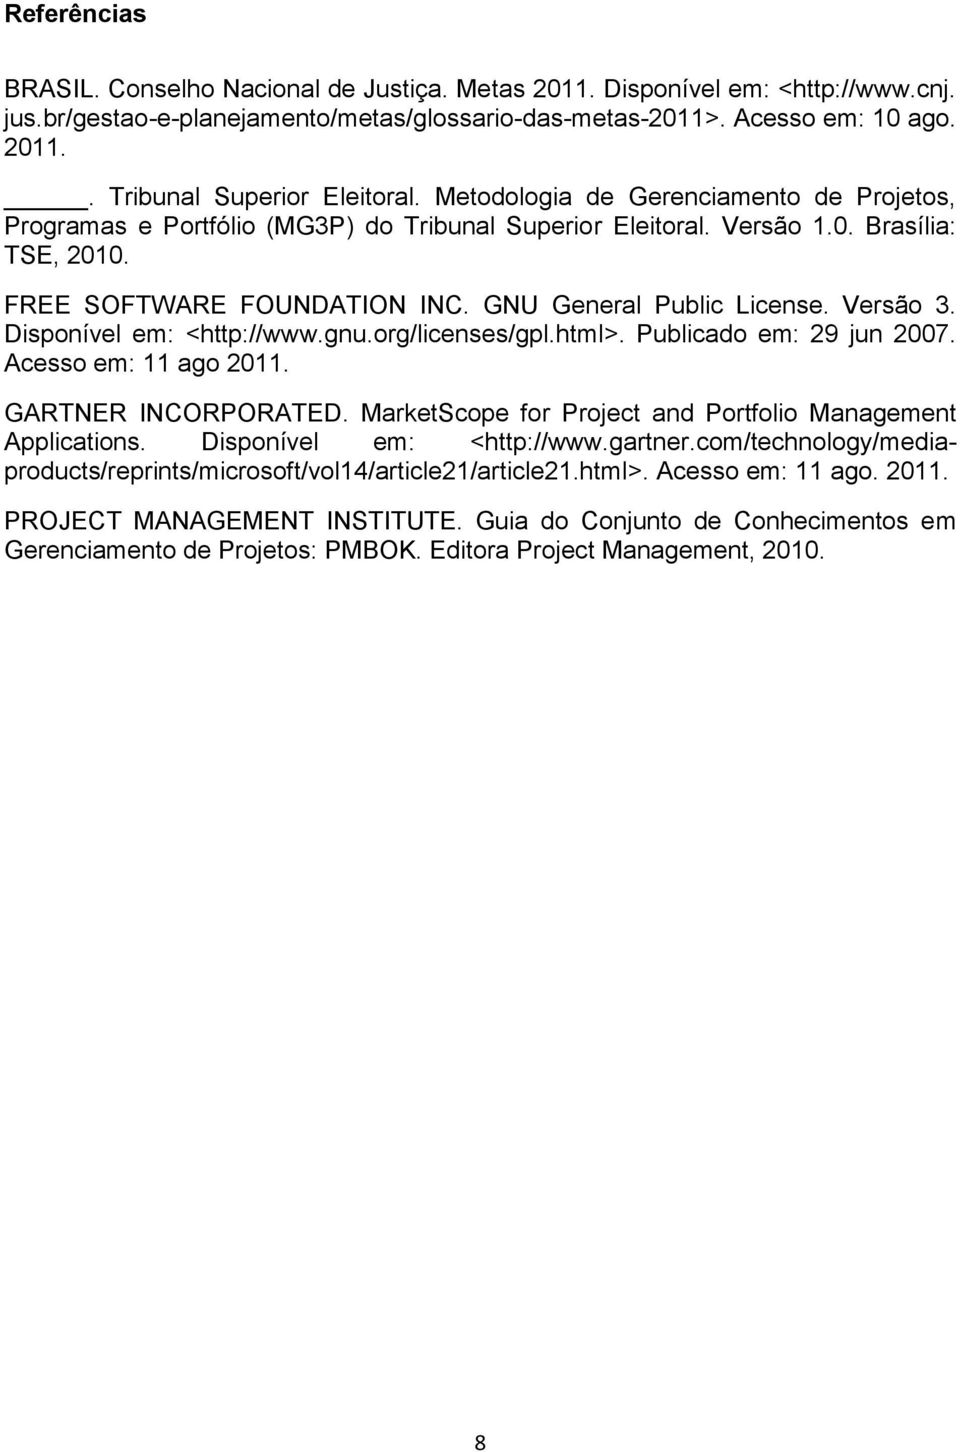 Versão 3. Disponível em: <http://www.gnu.org/licenses/gpl.html>. Publicado em: 29 jun 2007. Acesso em: 11 ago 2011. GARTNER INCORPORATED. MarketScope for Project and Portfolio Management Applications.